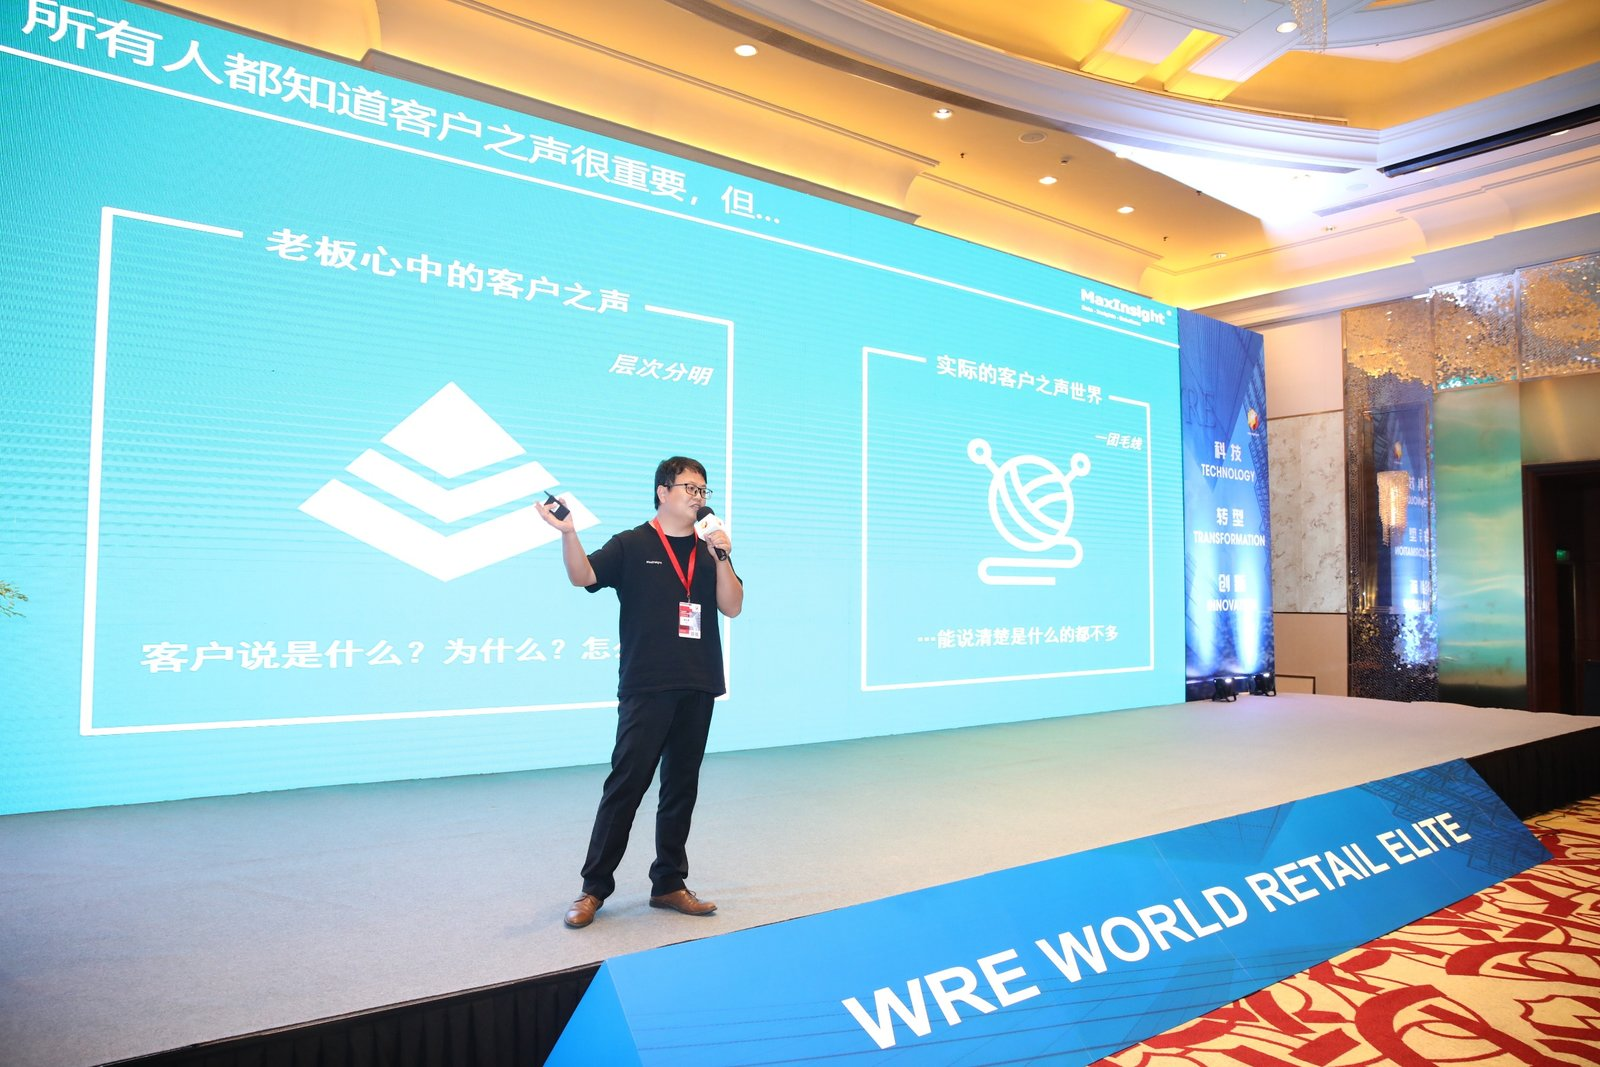 卓思斬獲WRE數字化轉型峰會“最佳零售體驗管理解決方案創新獎”